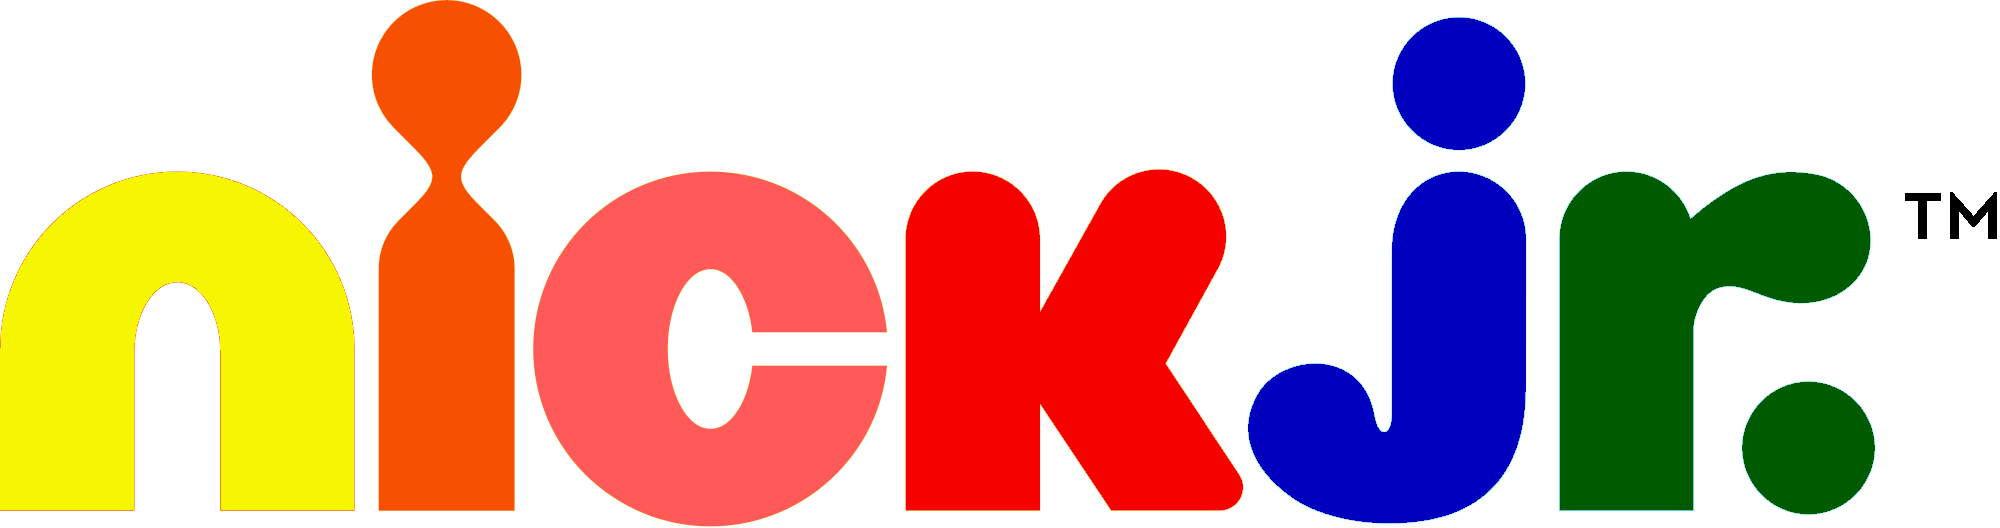 Канал nick jr. Nick Jr логотип Телеканал. Nickelodeon Jr логотип. Логотип канала Nick Junior. Никелодеон 1981.